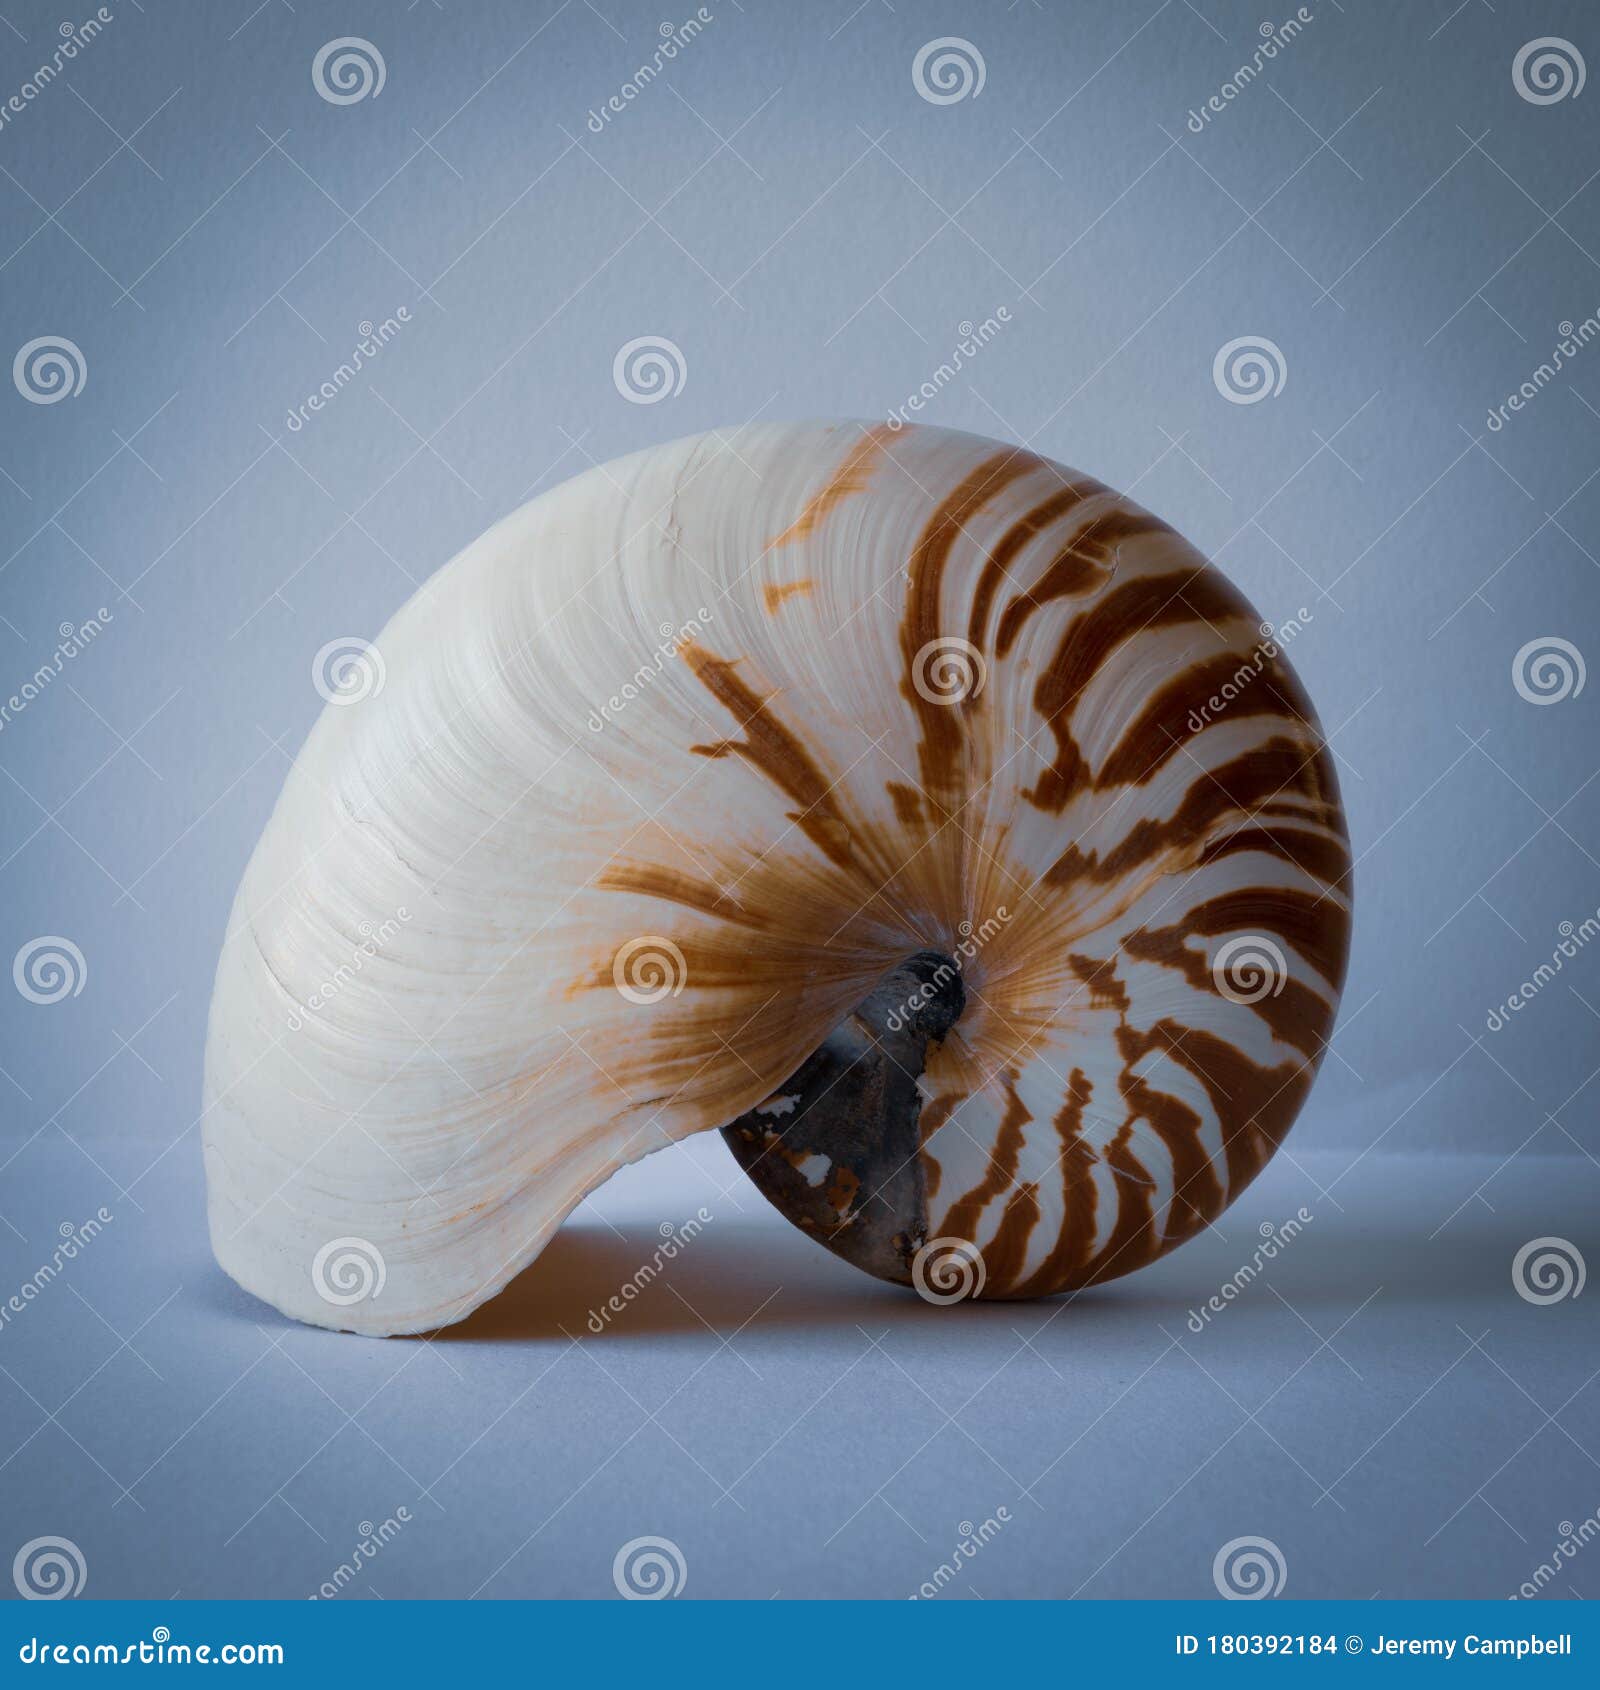 chambered nautilus shell